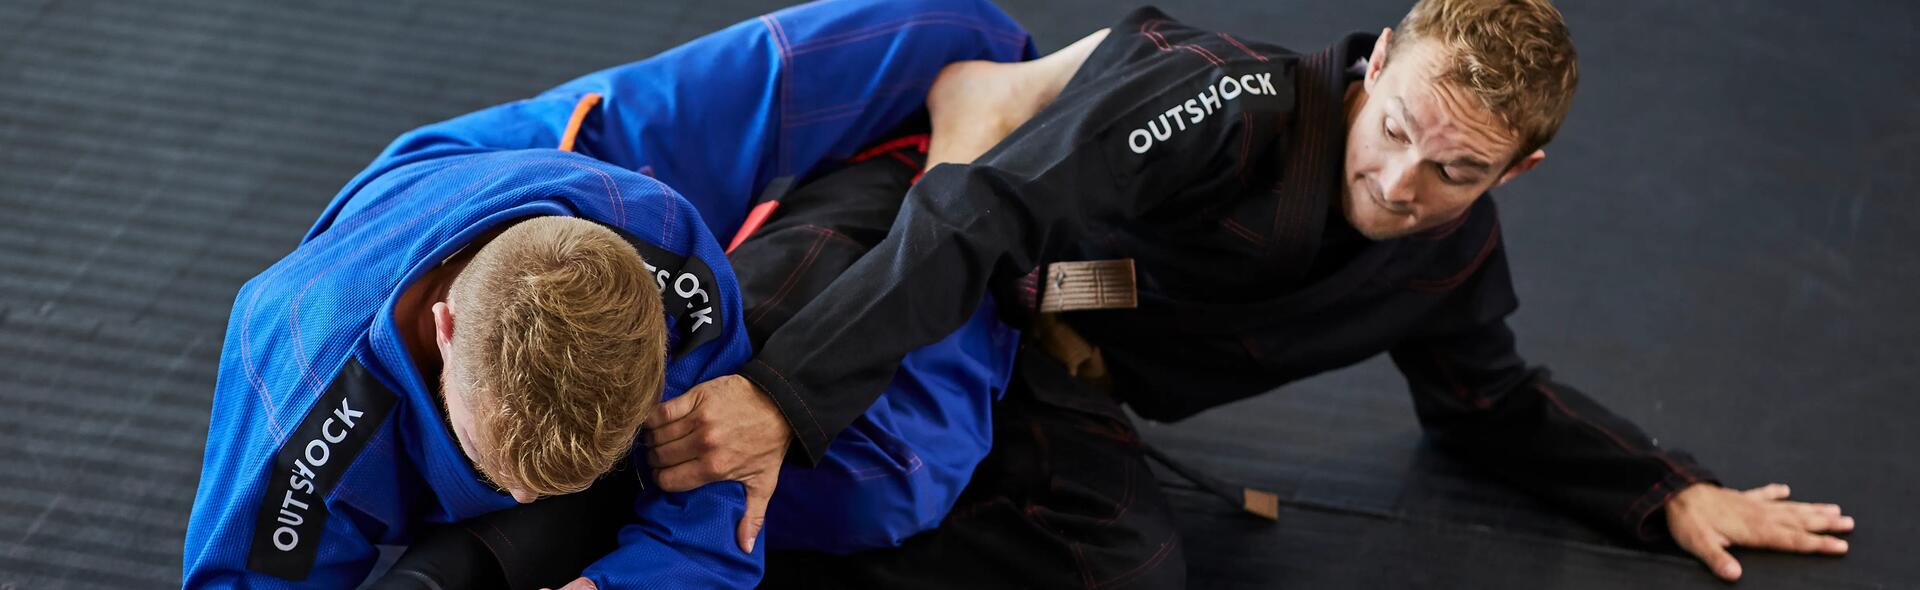 Choisir sa ceinture de jiu-jitsu brésilien